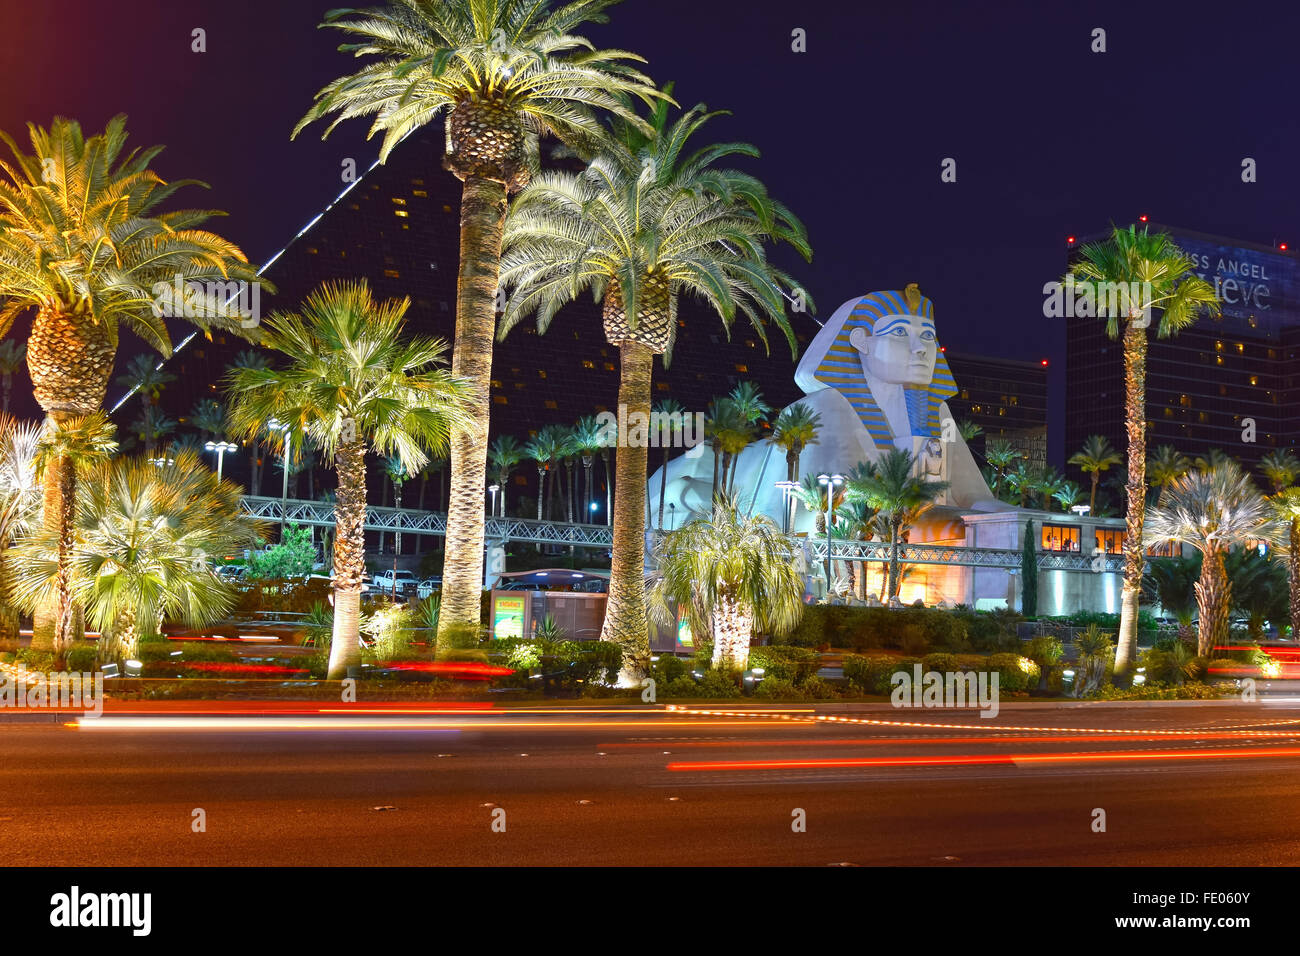 LAS VEGAS, USA, June 14, 2015: Part of the Las Vegas Strip, part of the Las Vegas Blvd with world class hotels and casinos Stock Photo